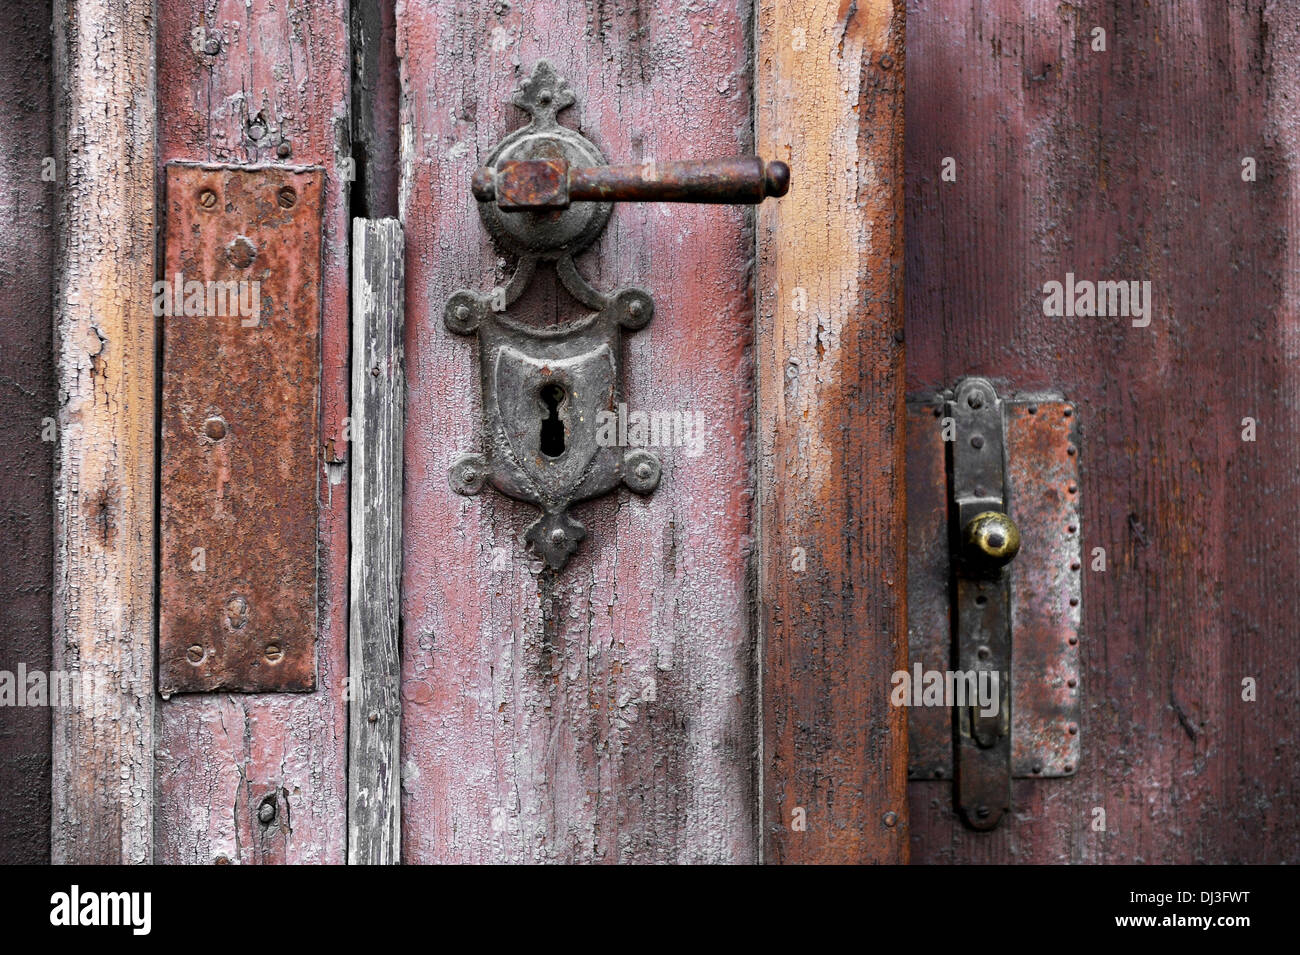 Old and rusty door handle and door lock Stock Photo